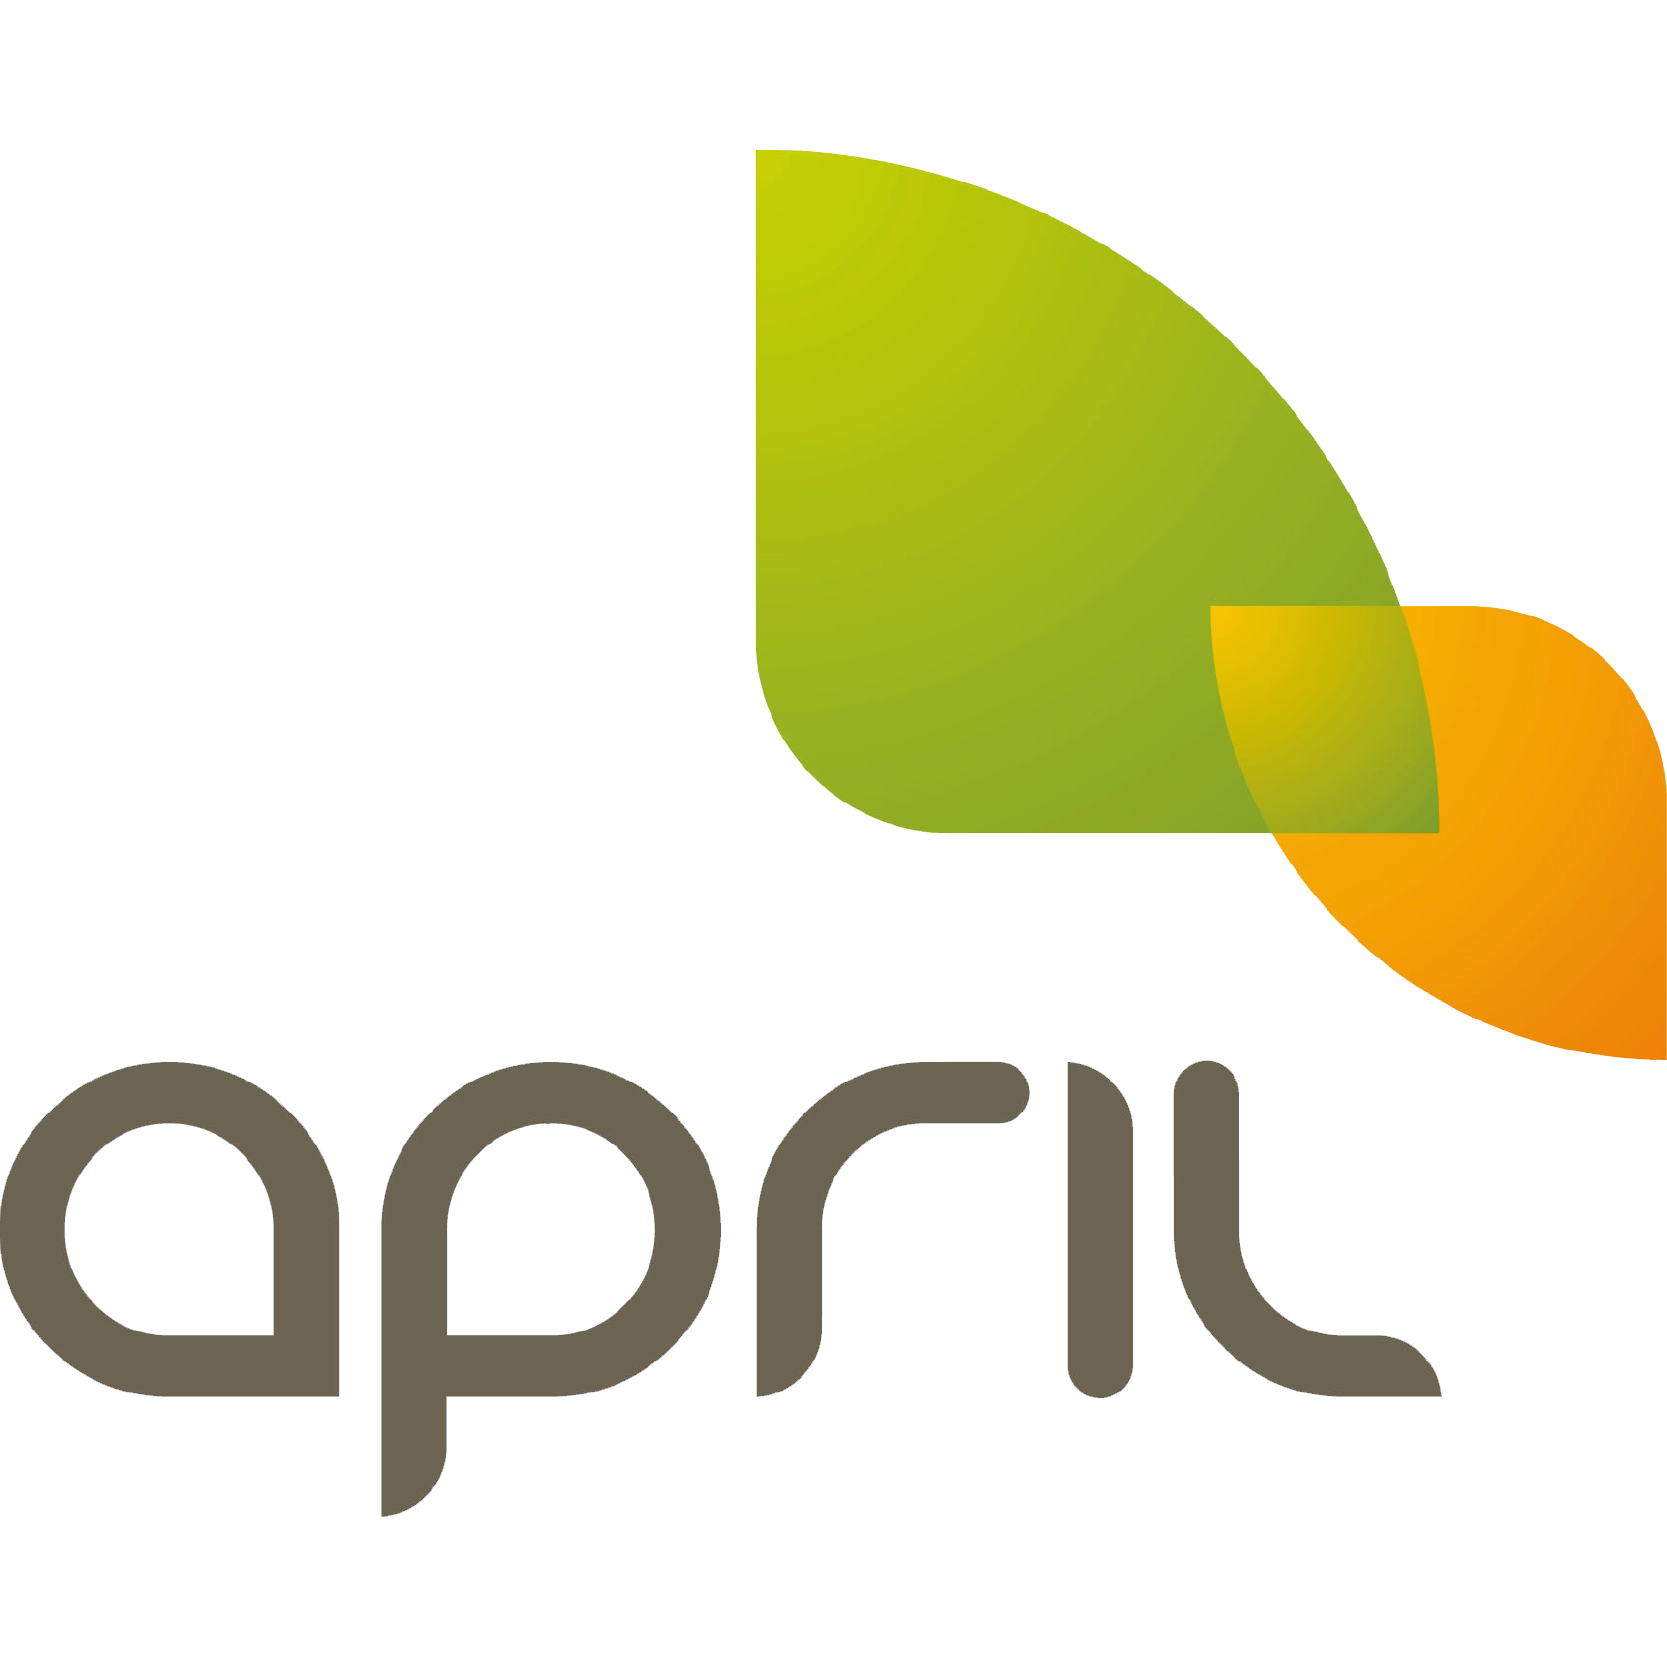 logo April